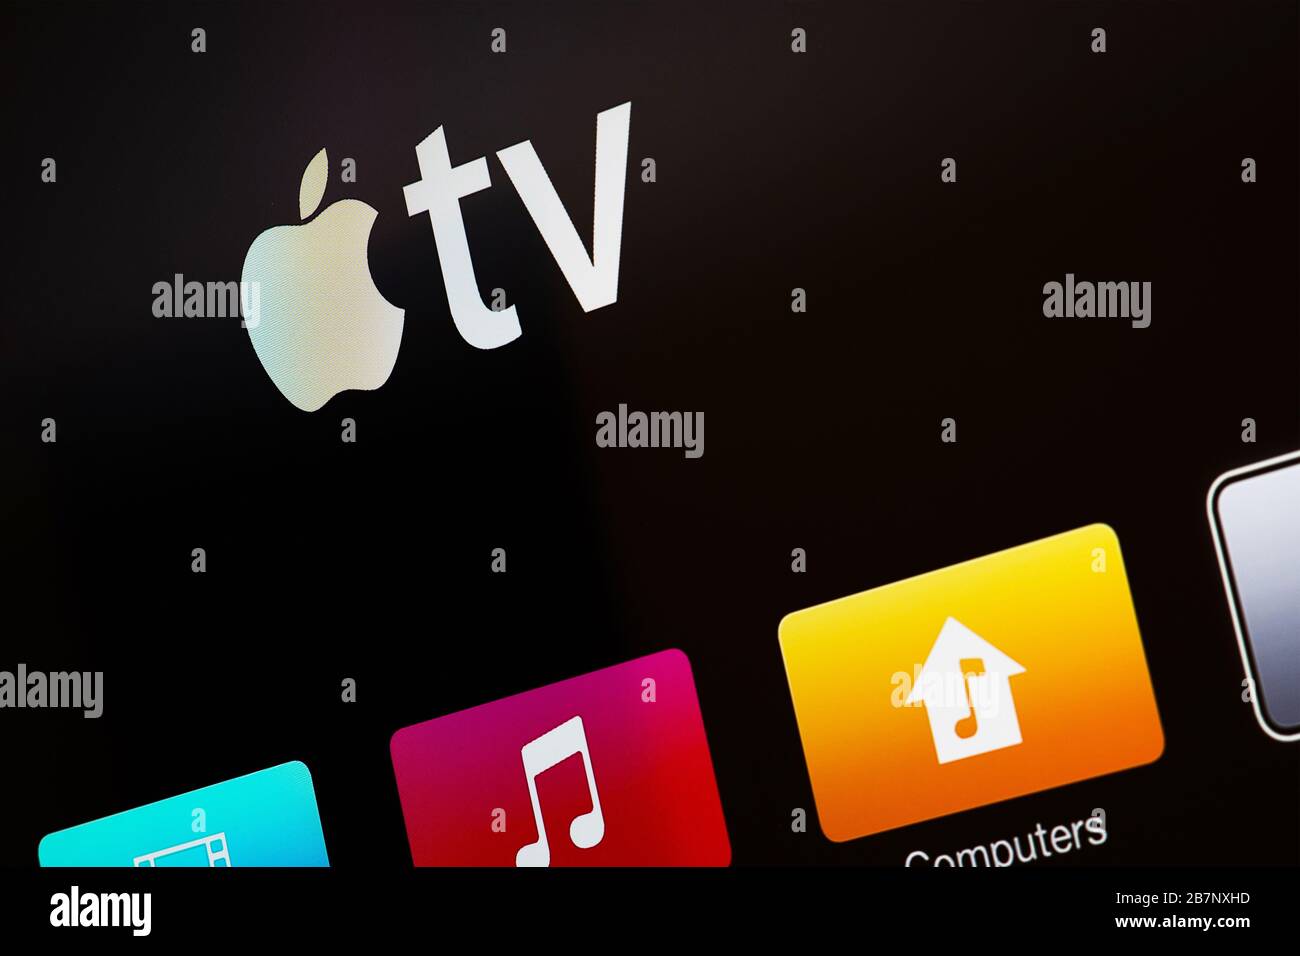 Miami/EE.UU. - Marth 17, 2020: Logotipo de Apple TV en la pantalla Smart TV. Apple TV es hardware y servicio de transmisión Foto de stock